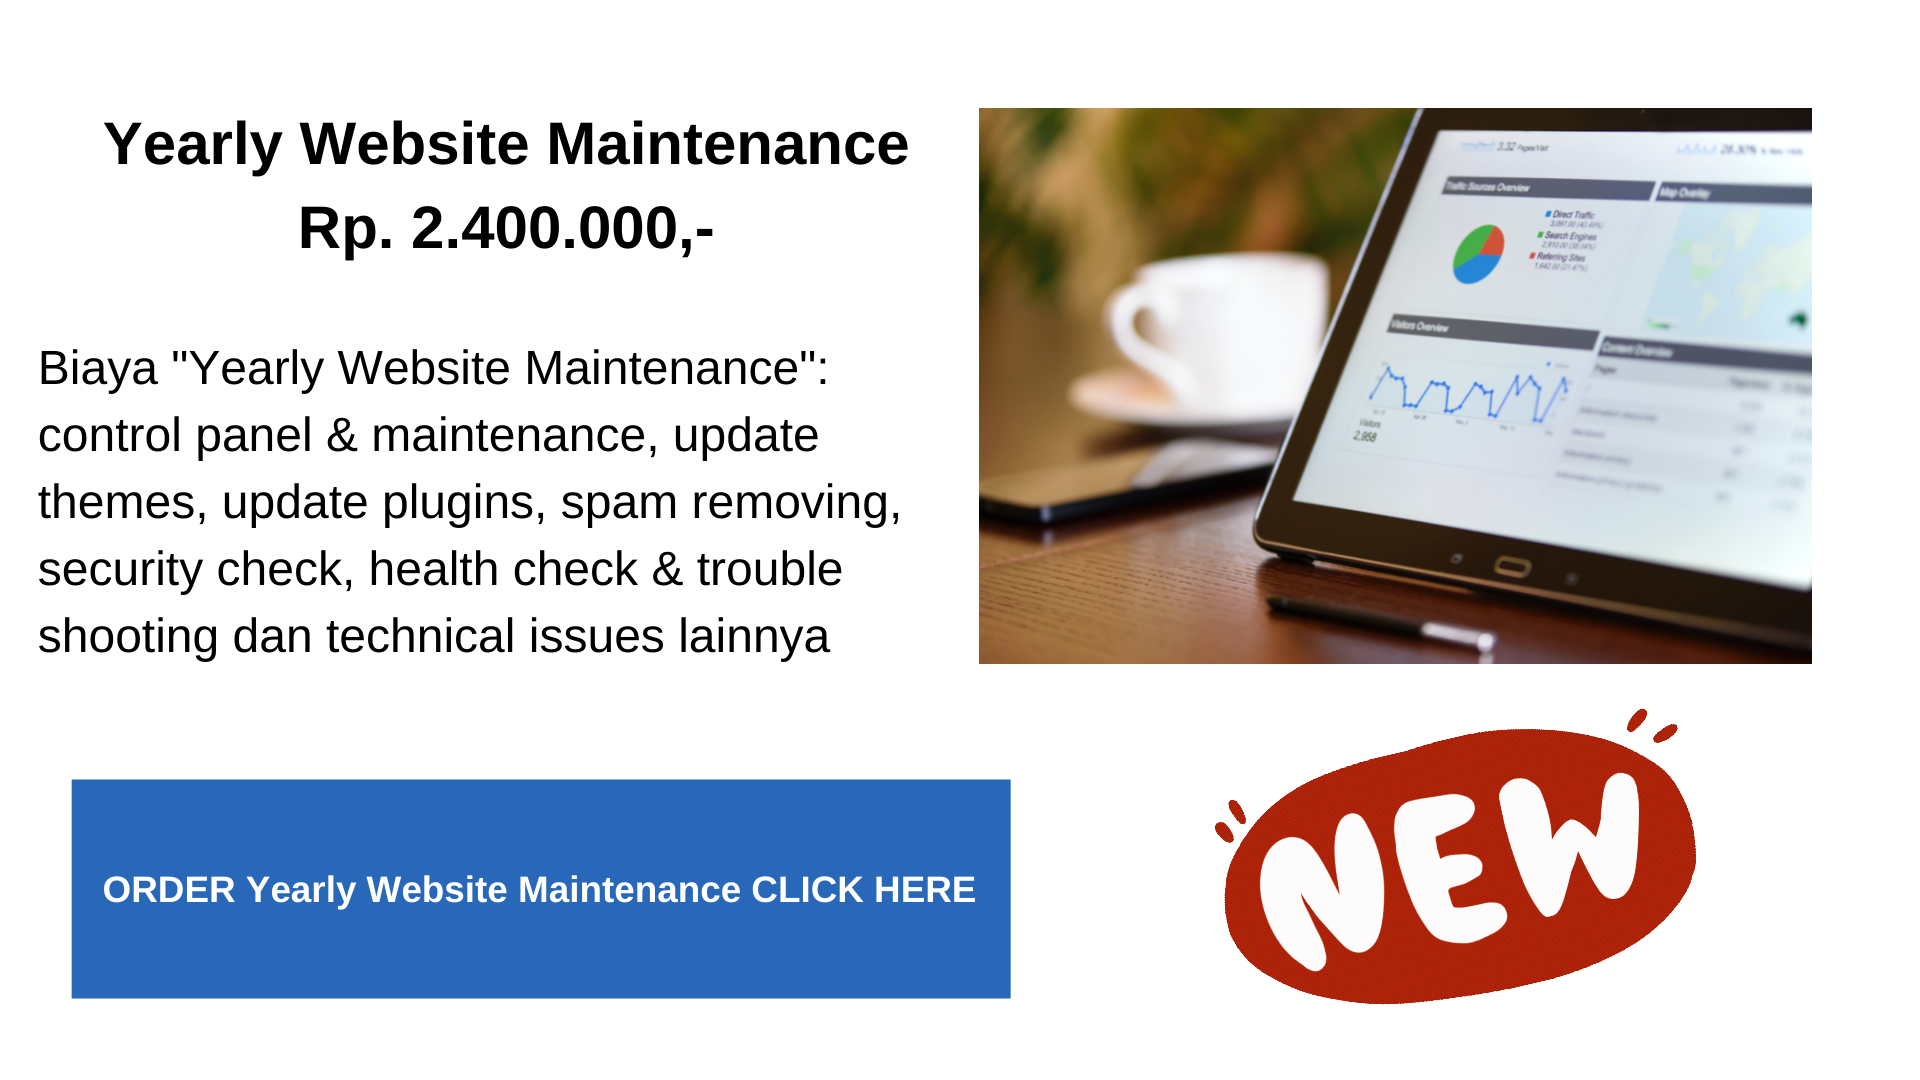 004 Muhammad Idham Azhari Digital - Yearly Website Maintenance